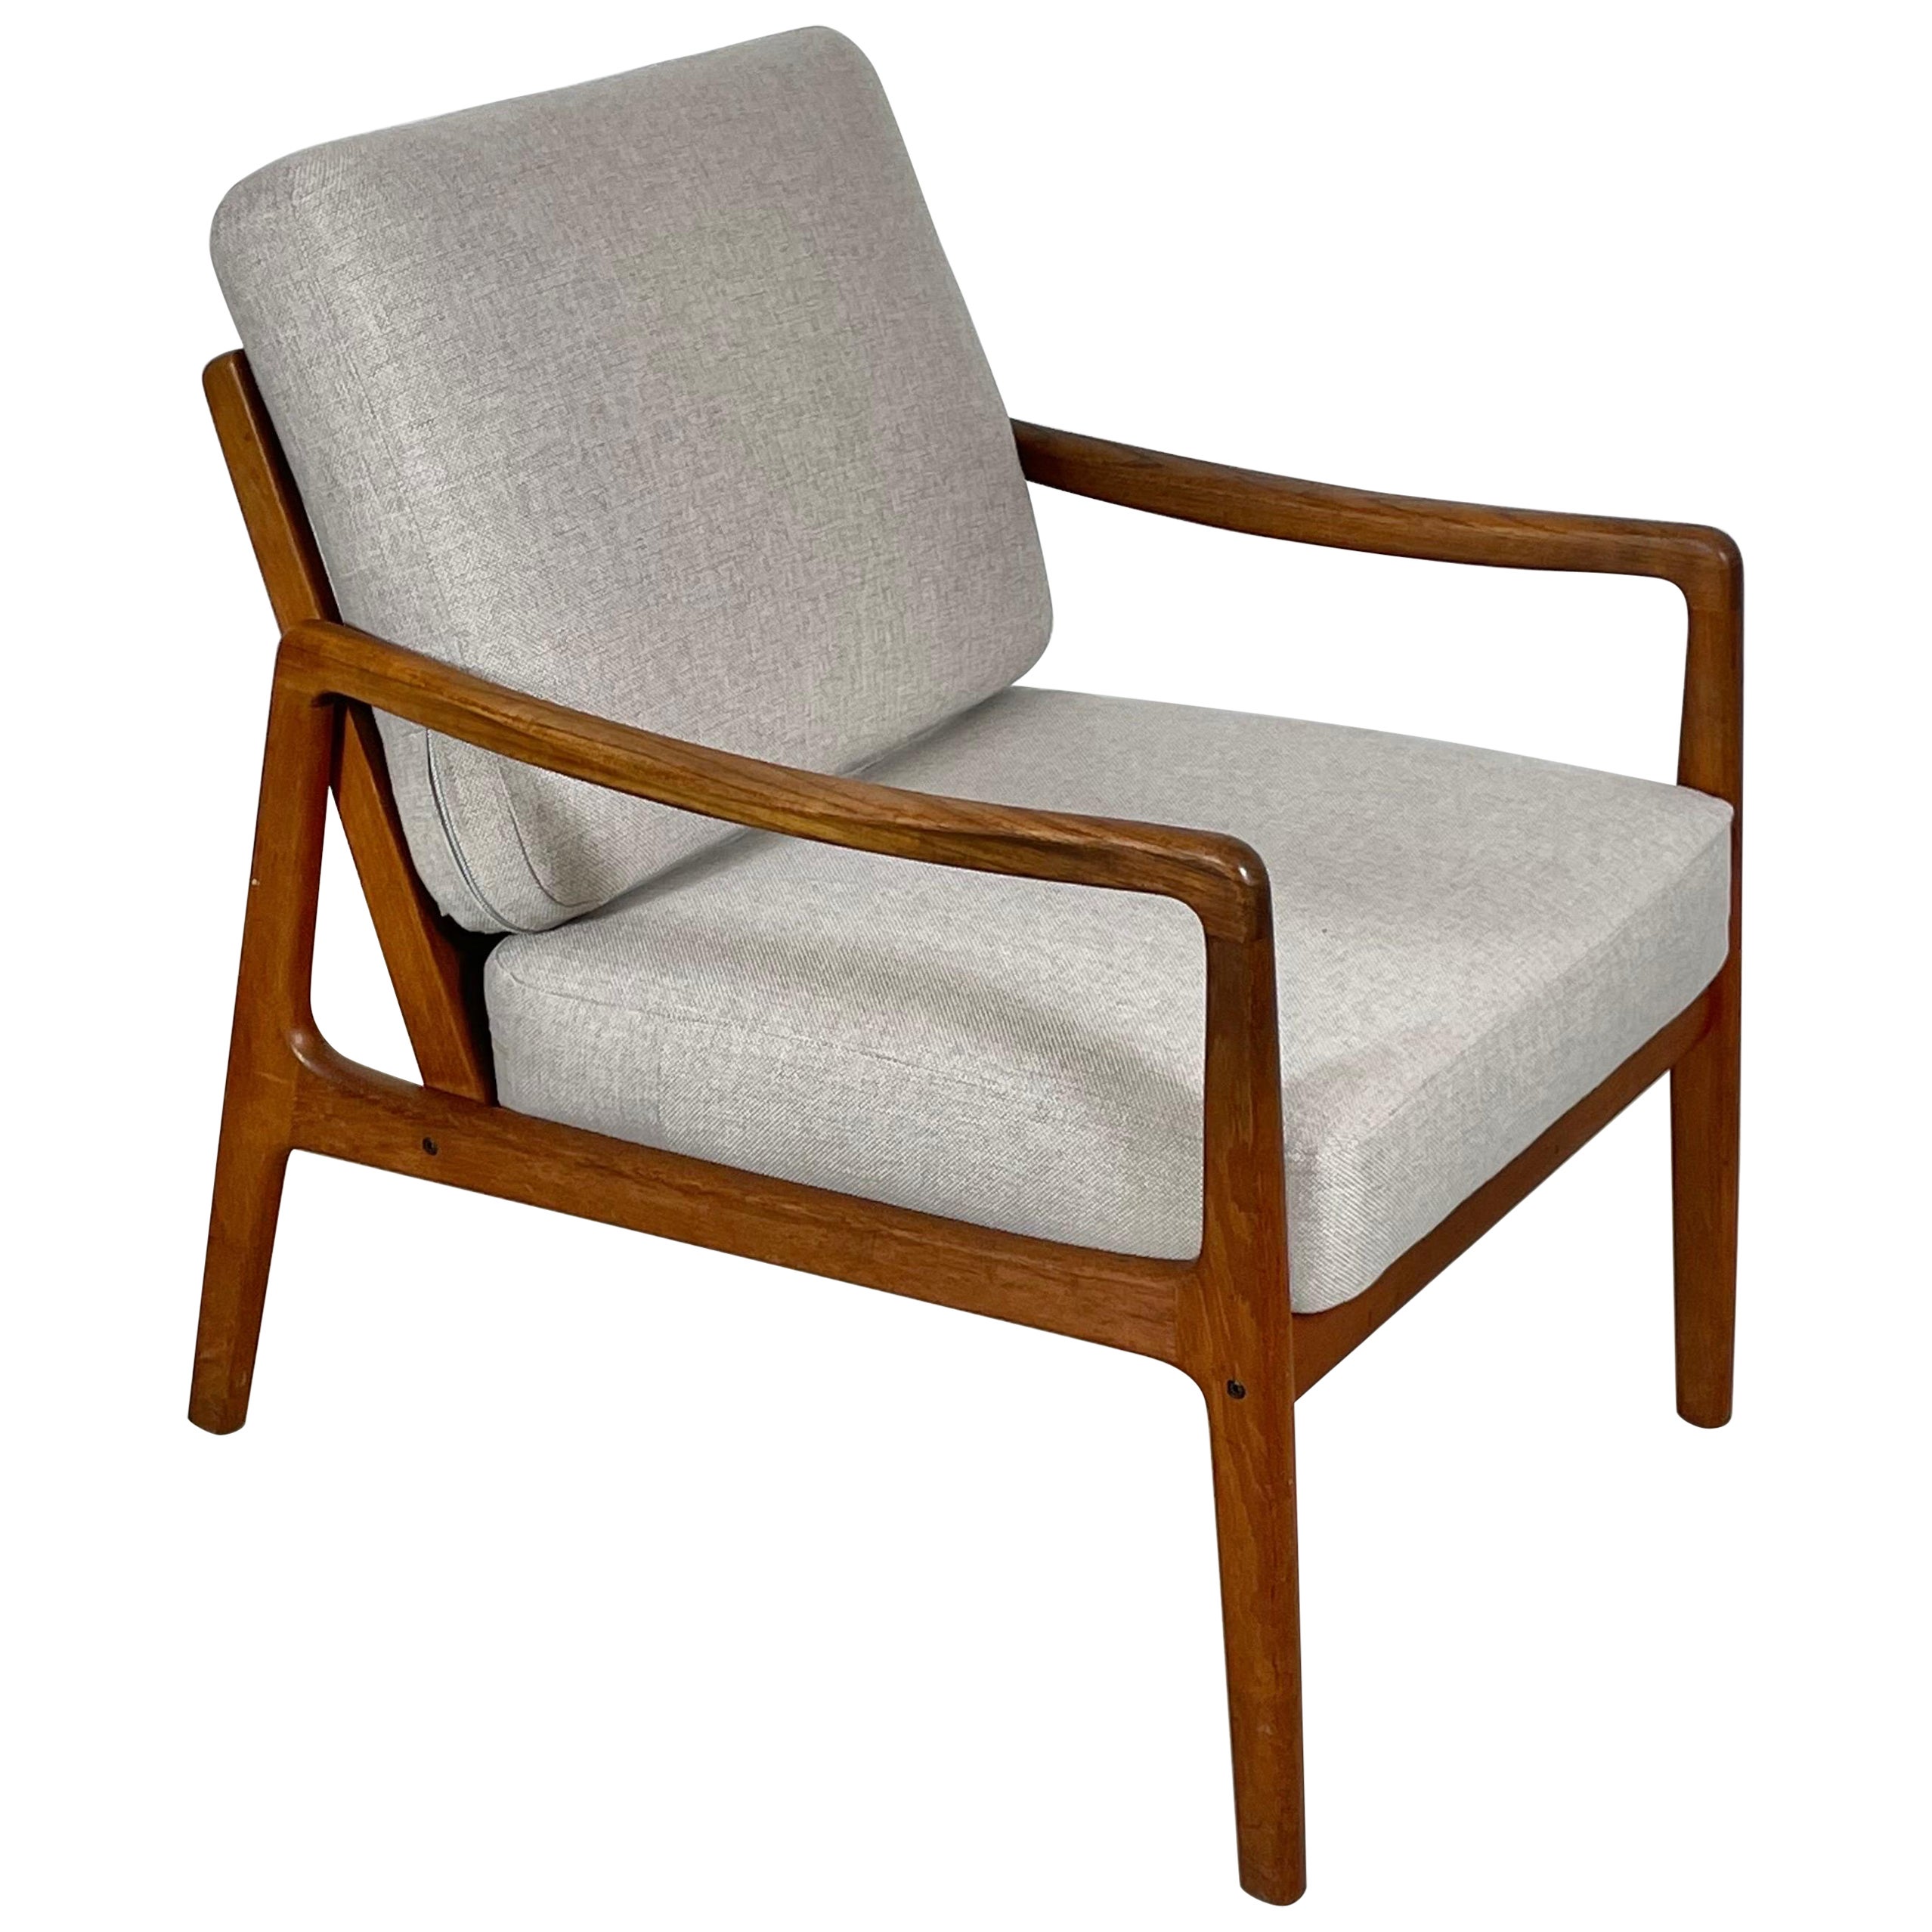 Dänischer Sessel aus Teakholz von Ole Wanscher, 1950er-Jahre